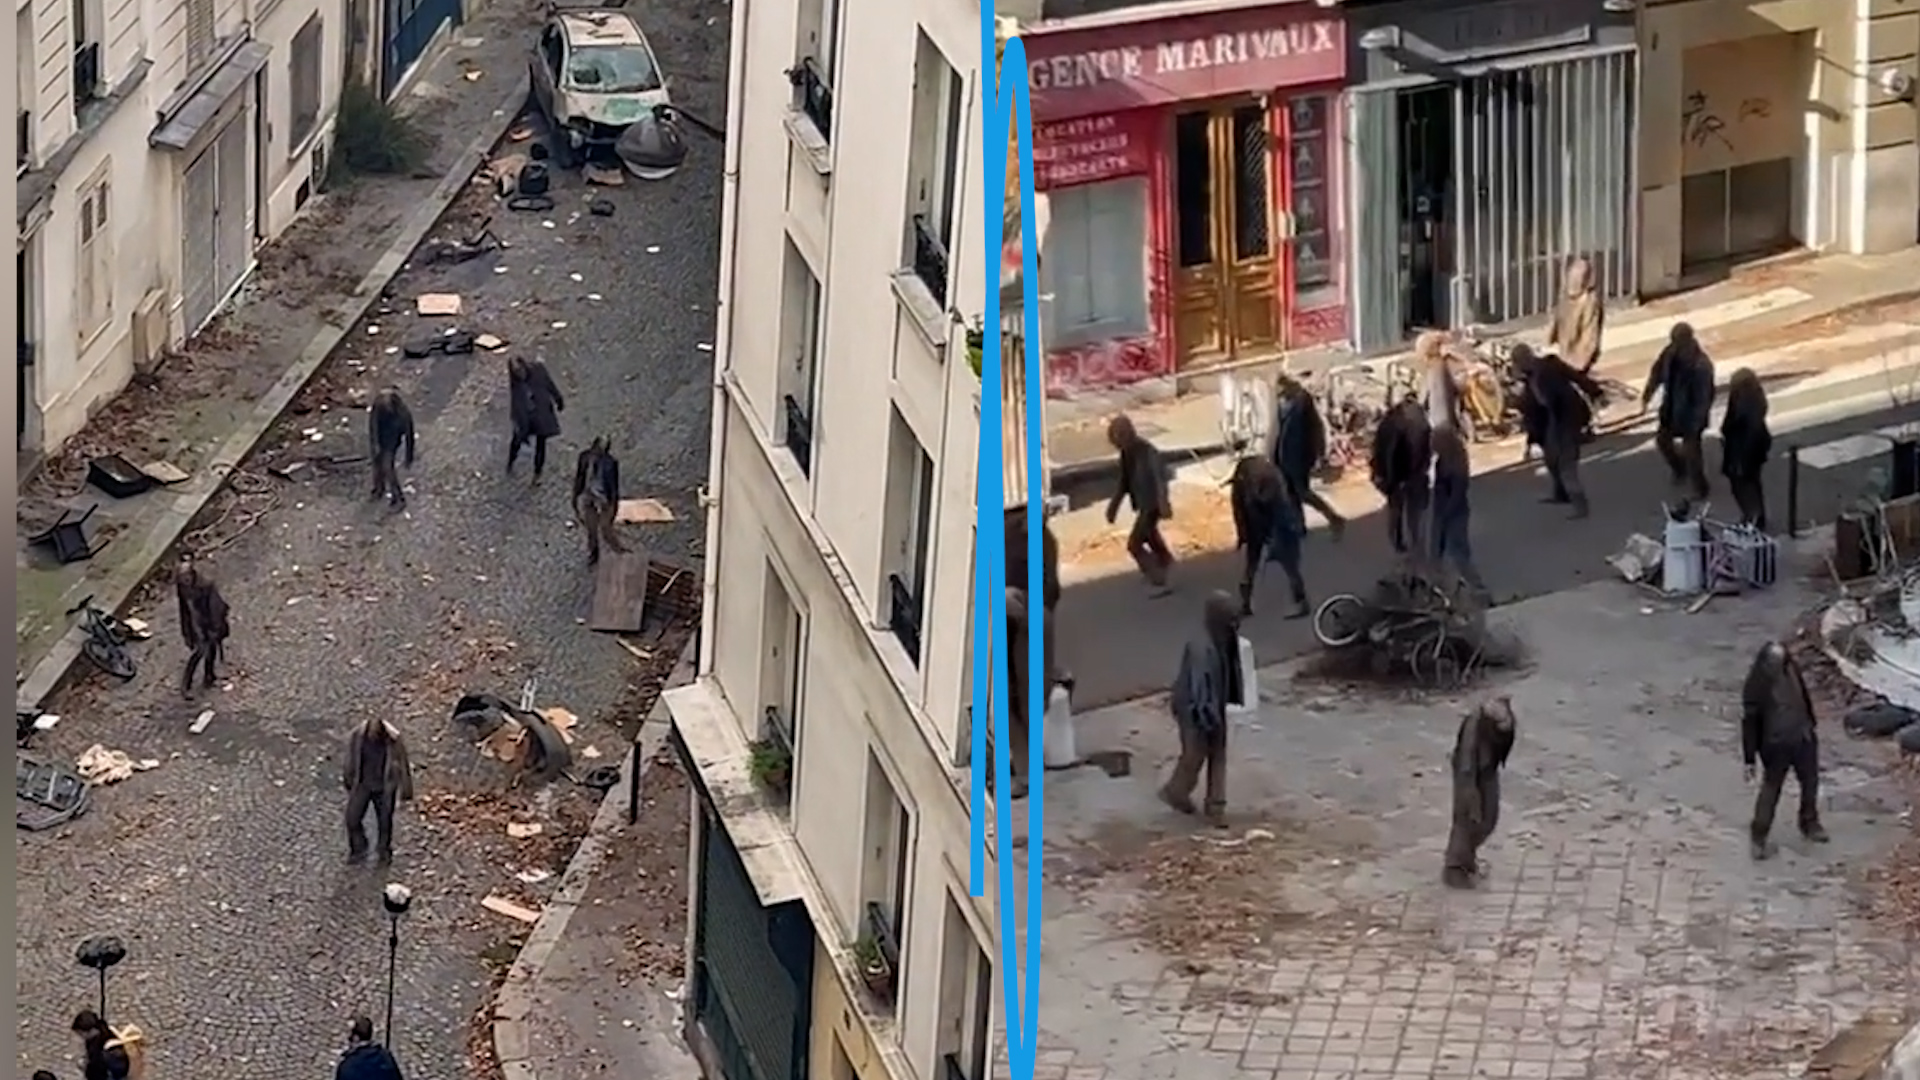 L'une des séries les plus attendues de l'année est en ce moment en tournage dans les rues de Paris. ll s'agit du spin-off de The Walking Dead consacré au personnage de Daryl Dixon.